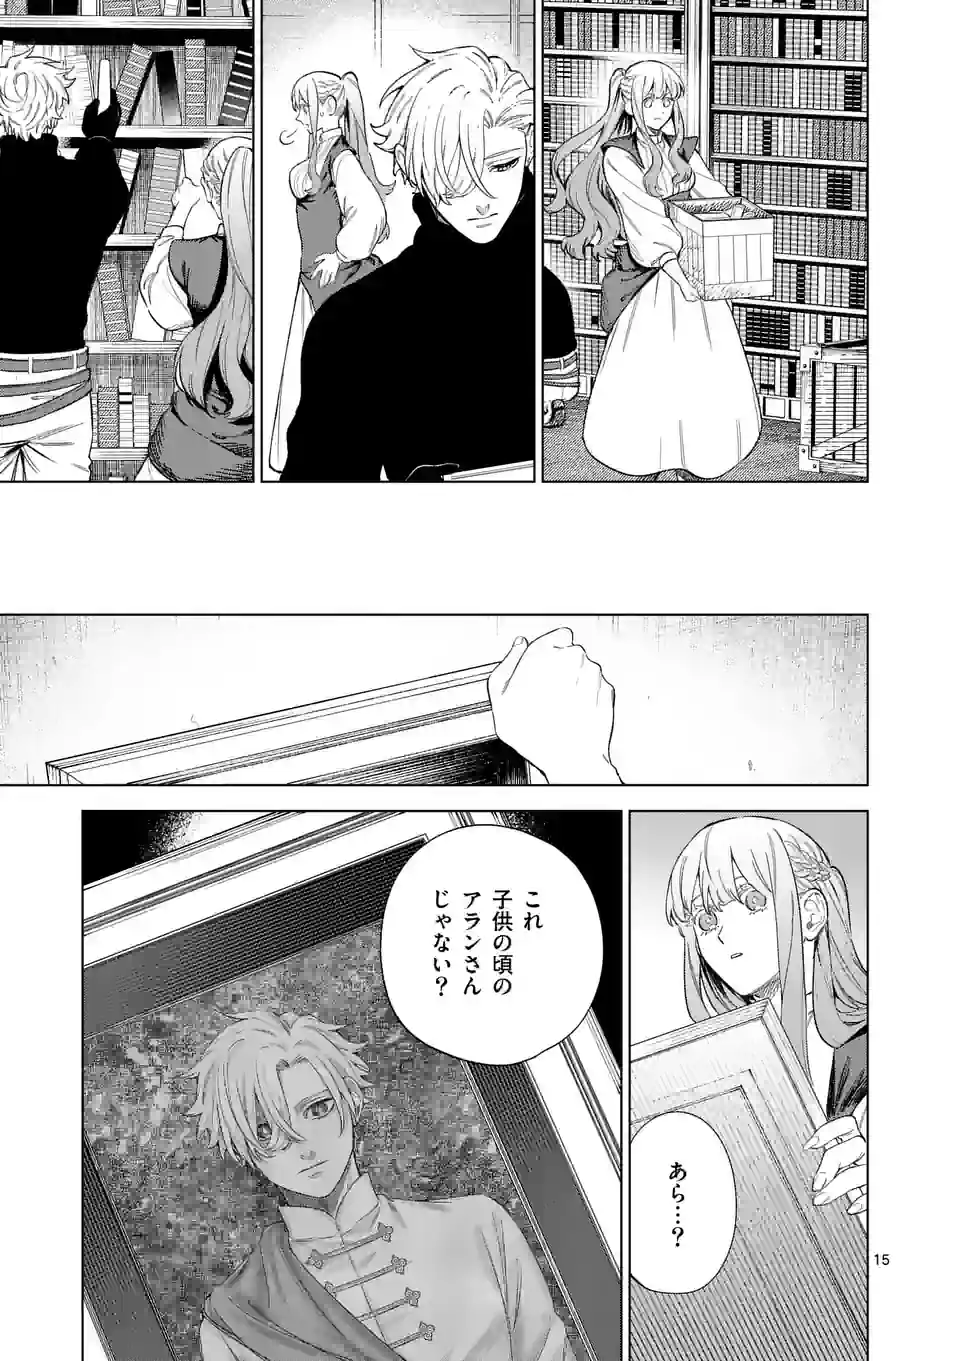 Mou Kyoumi ga Nai to Rikonsareta Reijou no Igai to Tanoshii Shinseikatsu - Chapter 10.2 - Page 1